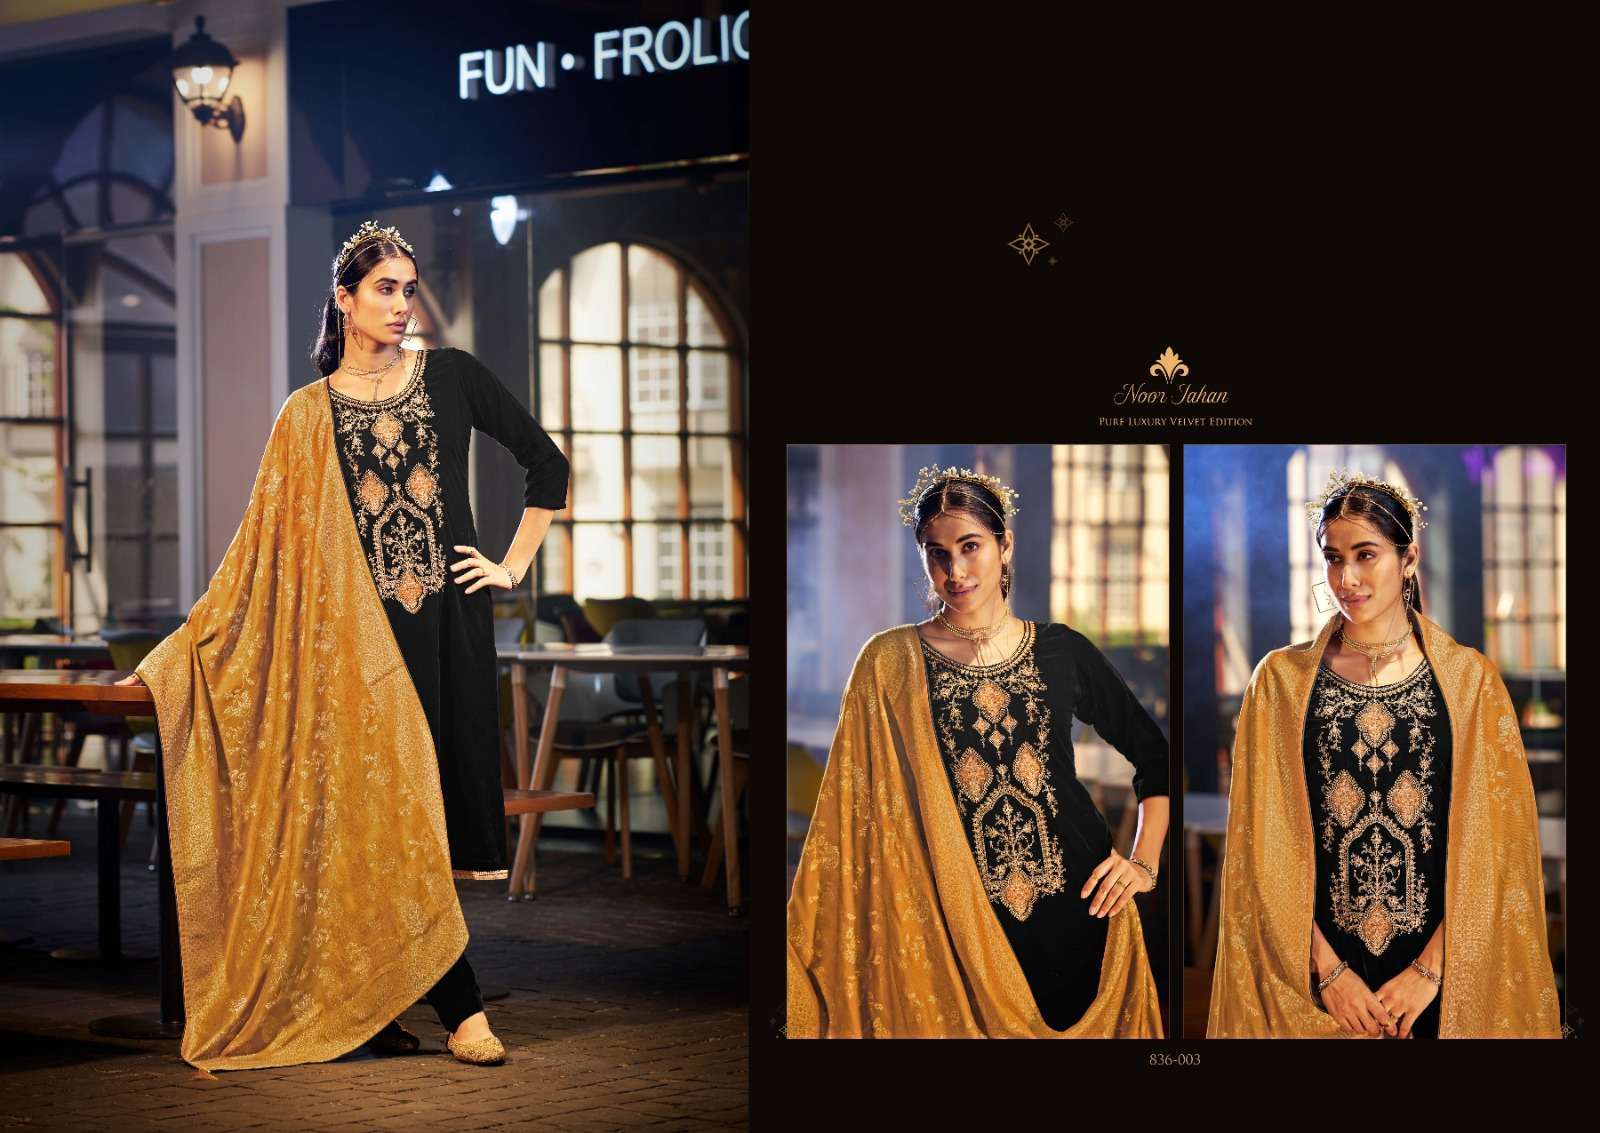 belliza designer studio  noor jahan velvet attractive look salwar suit catalog